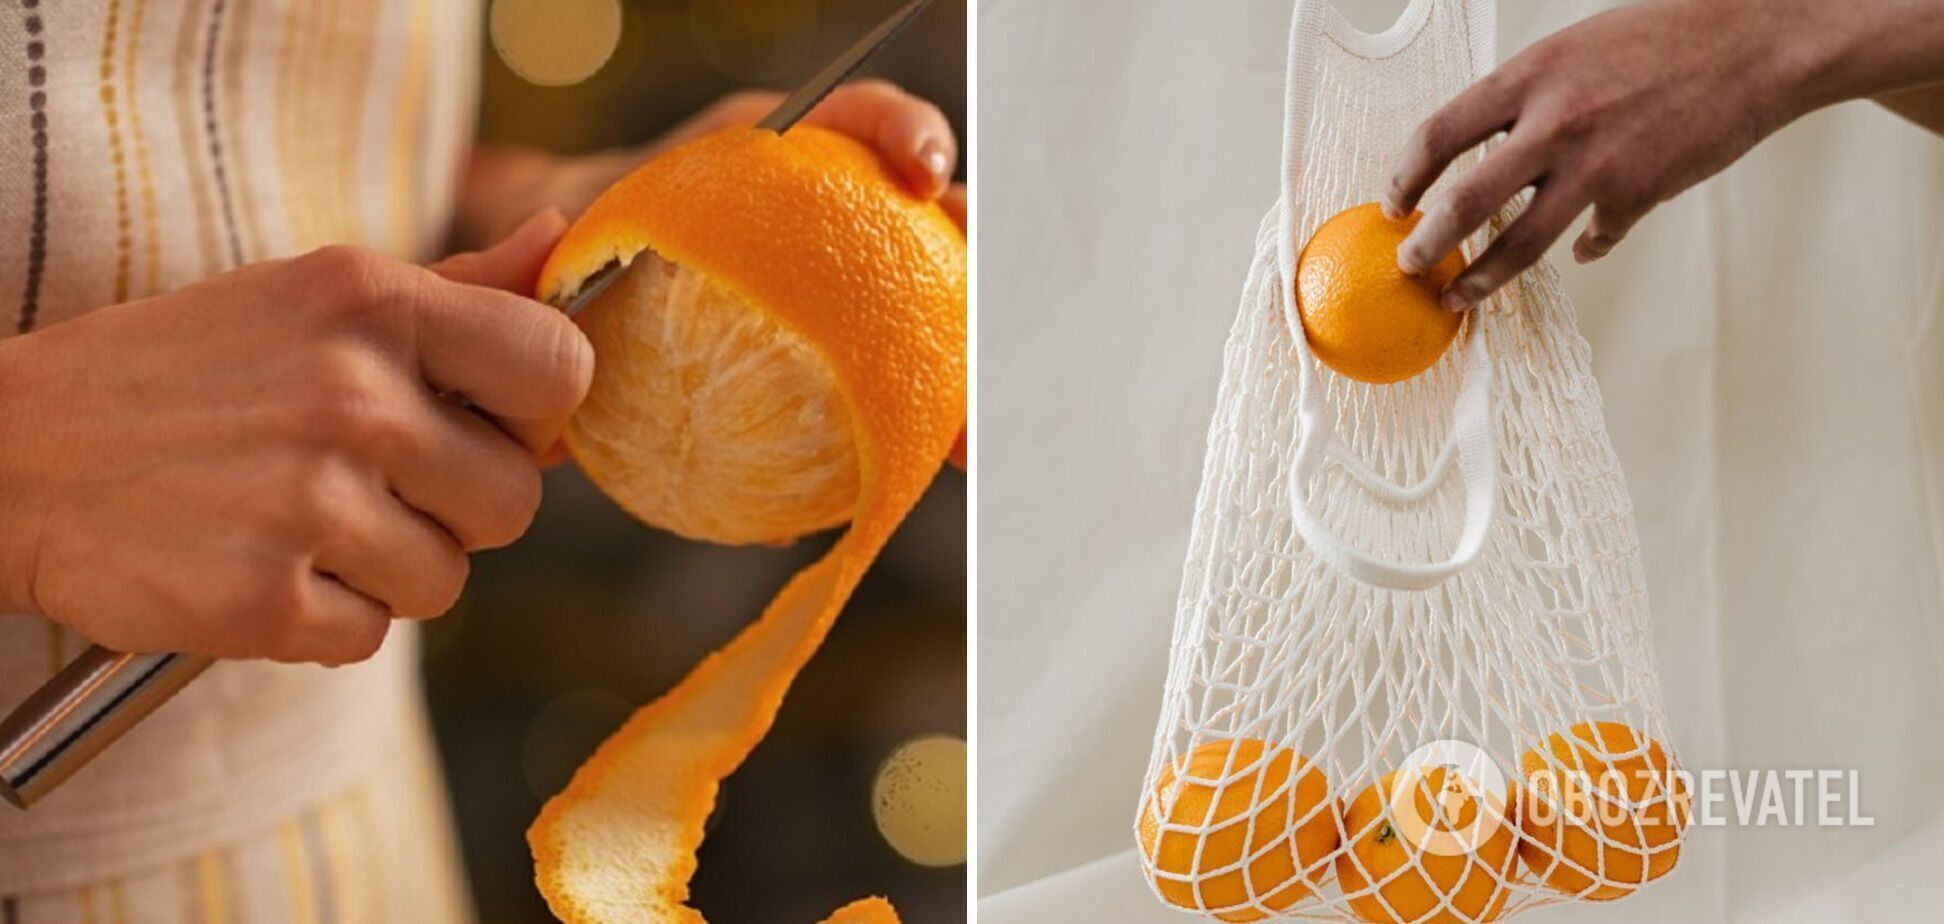 Спелые апельсины